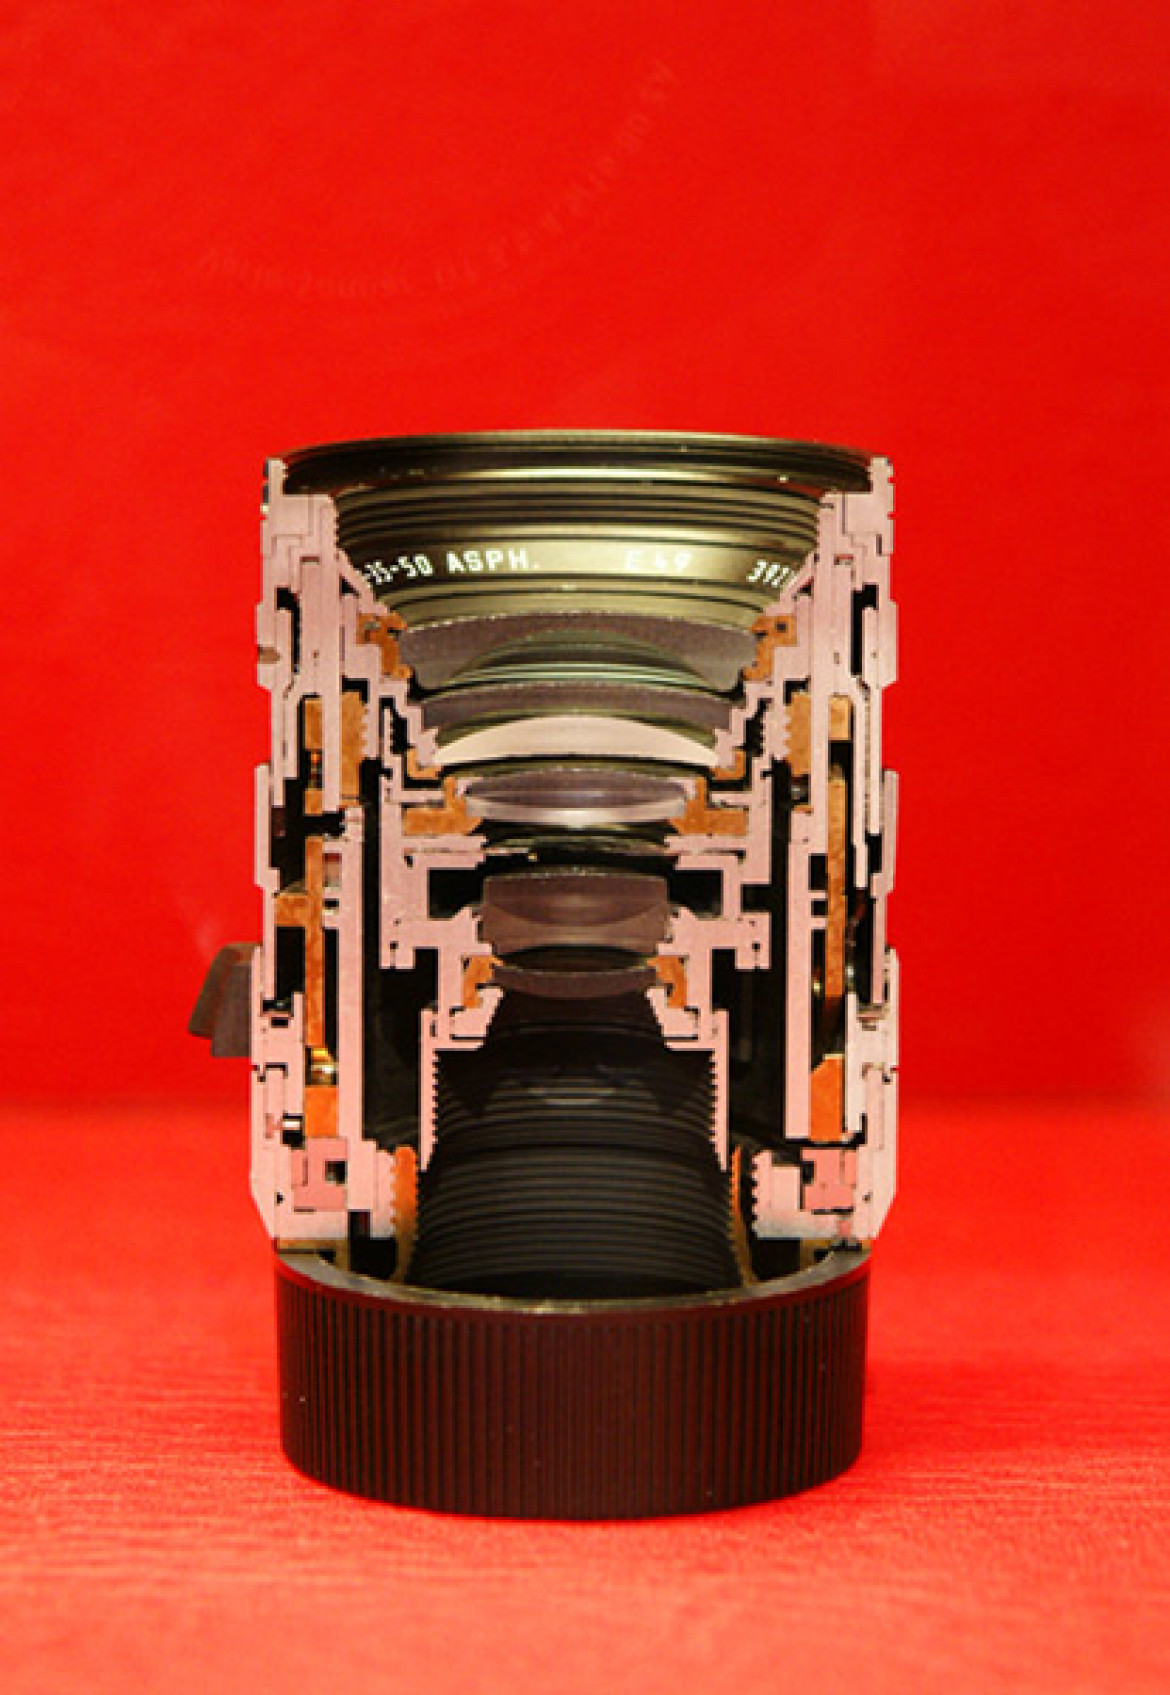 przekrój obiektywu Leica